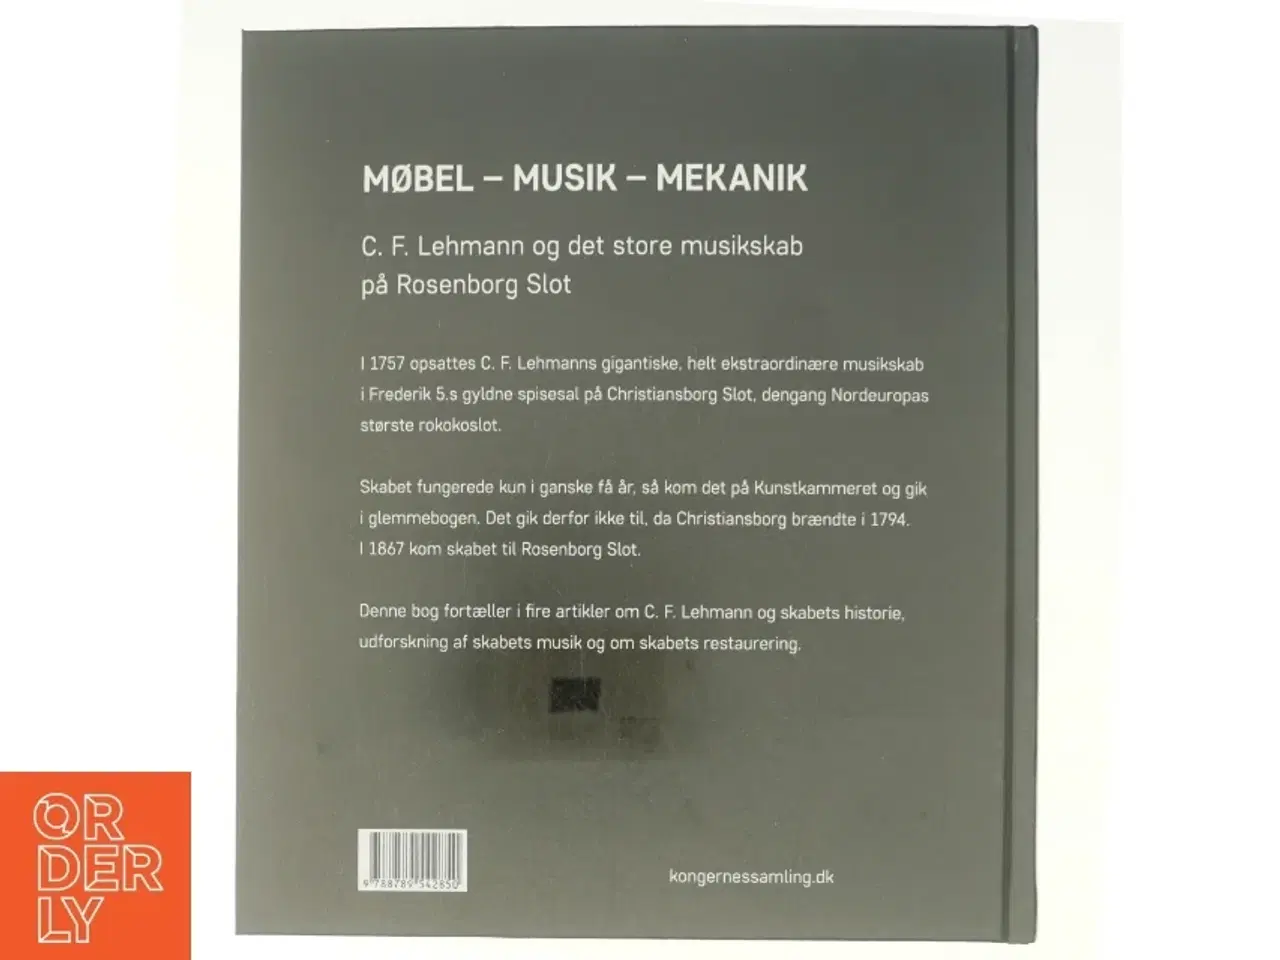 Billede 3 - Møbel-musik-mekanik fra Kongernes Samling